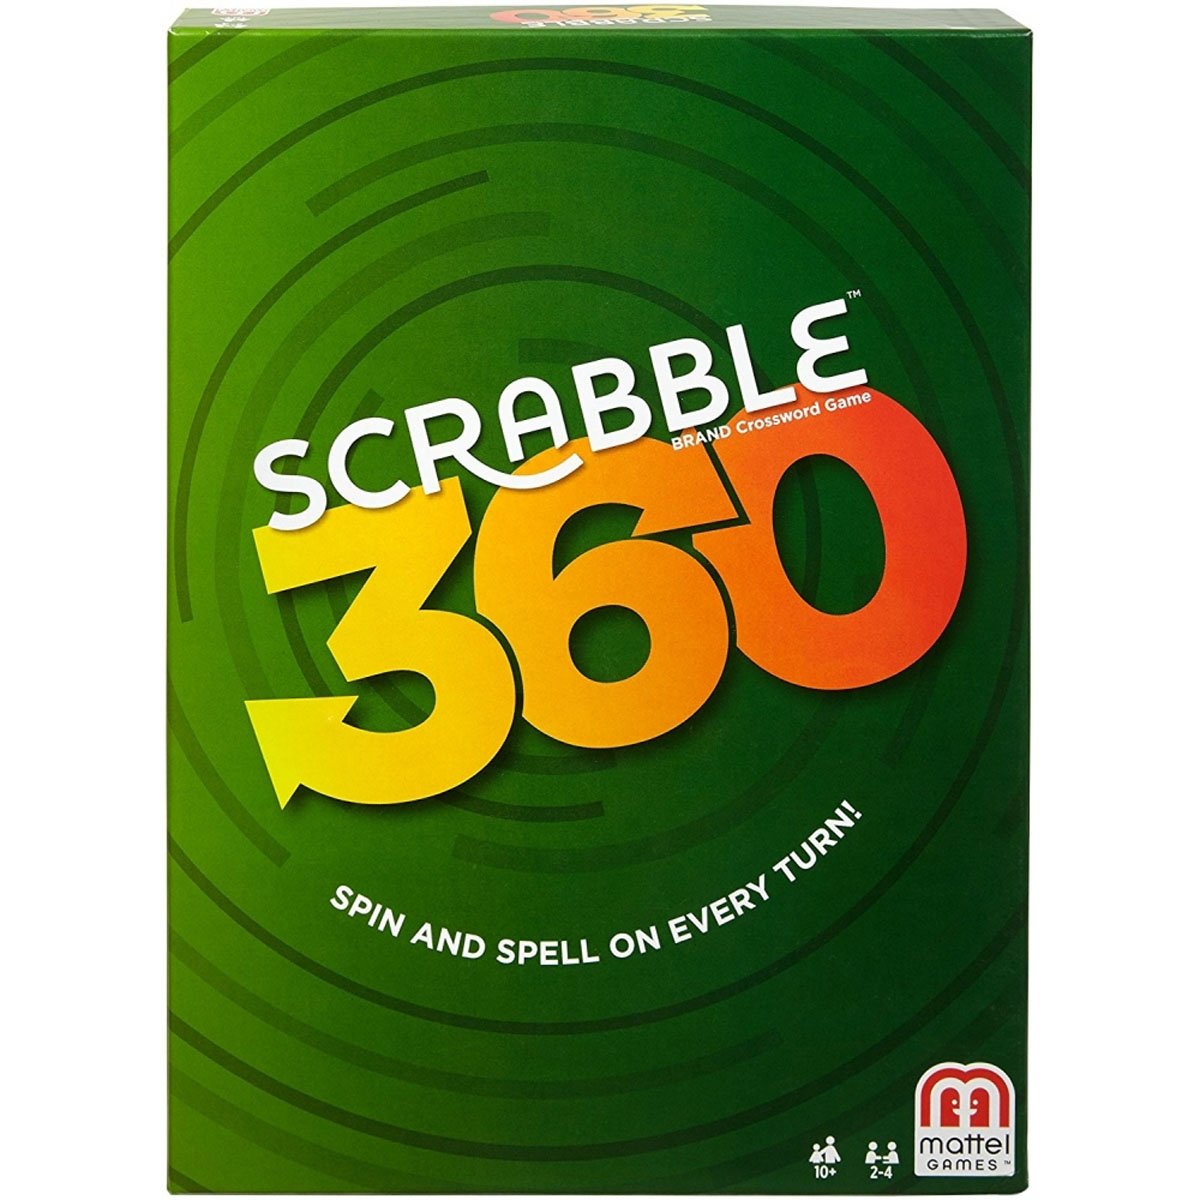 Scrabble - Scrabble 360